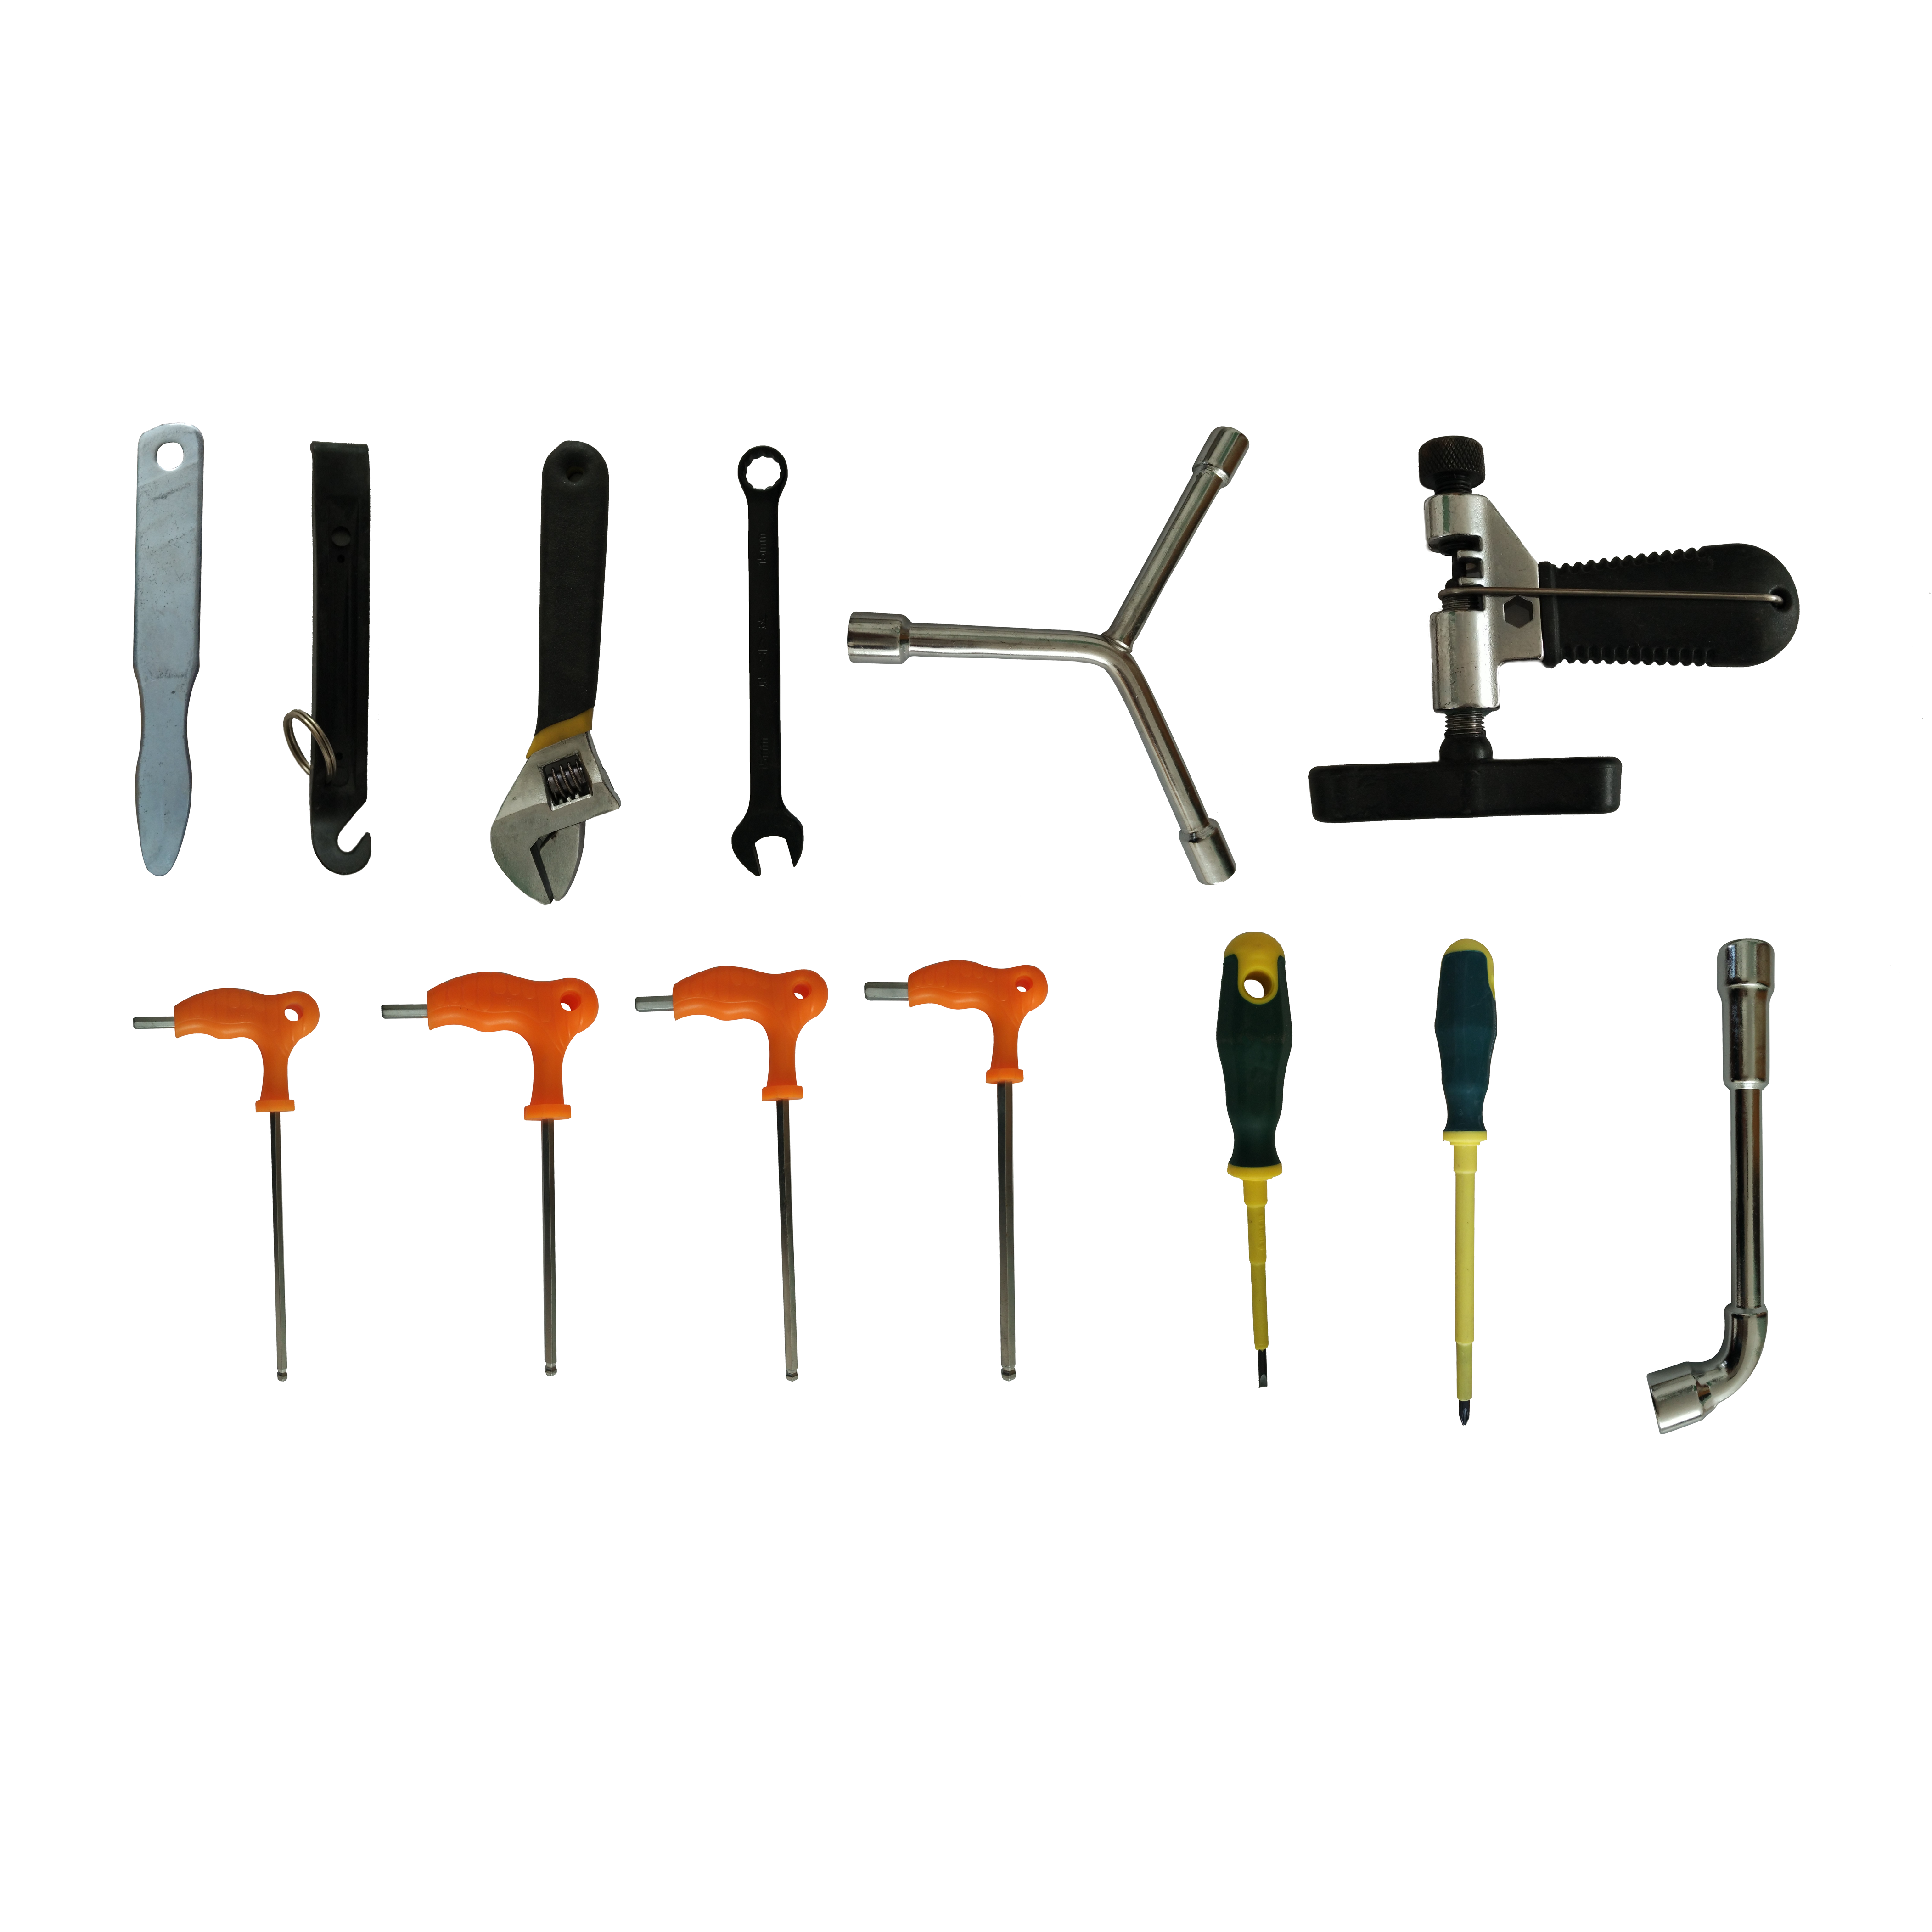 Bicycle tool kit